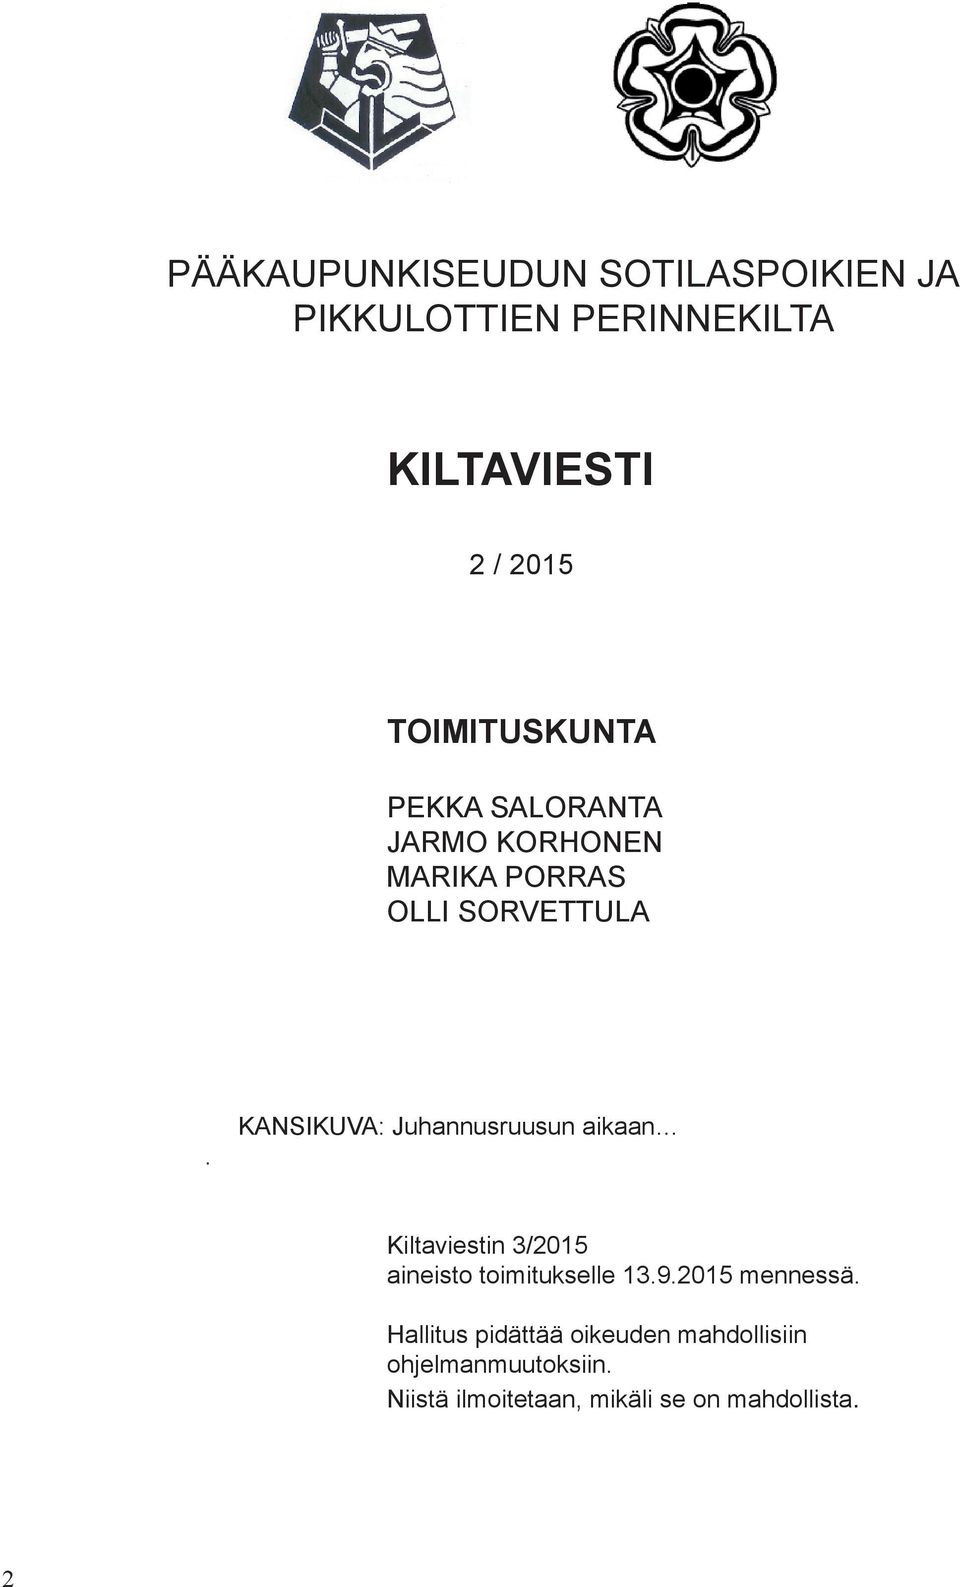 KANSIKUVA: Juhannusruusun aikaan Kiltaviestin 3/2015 aineisto toimitukselle 13.9.